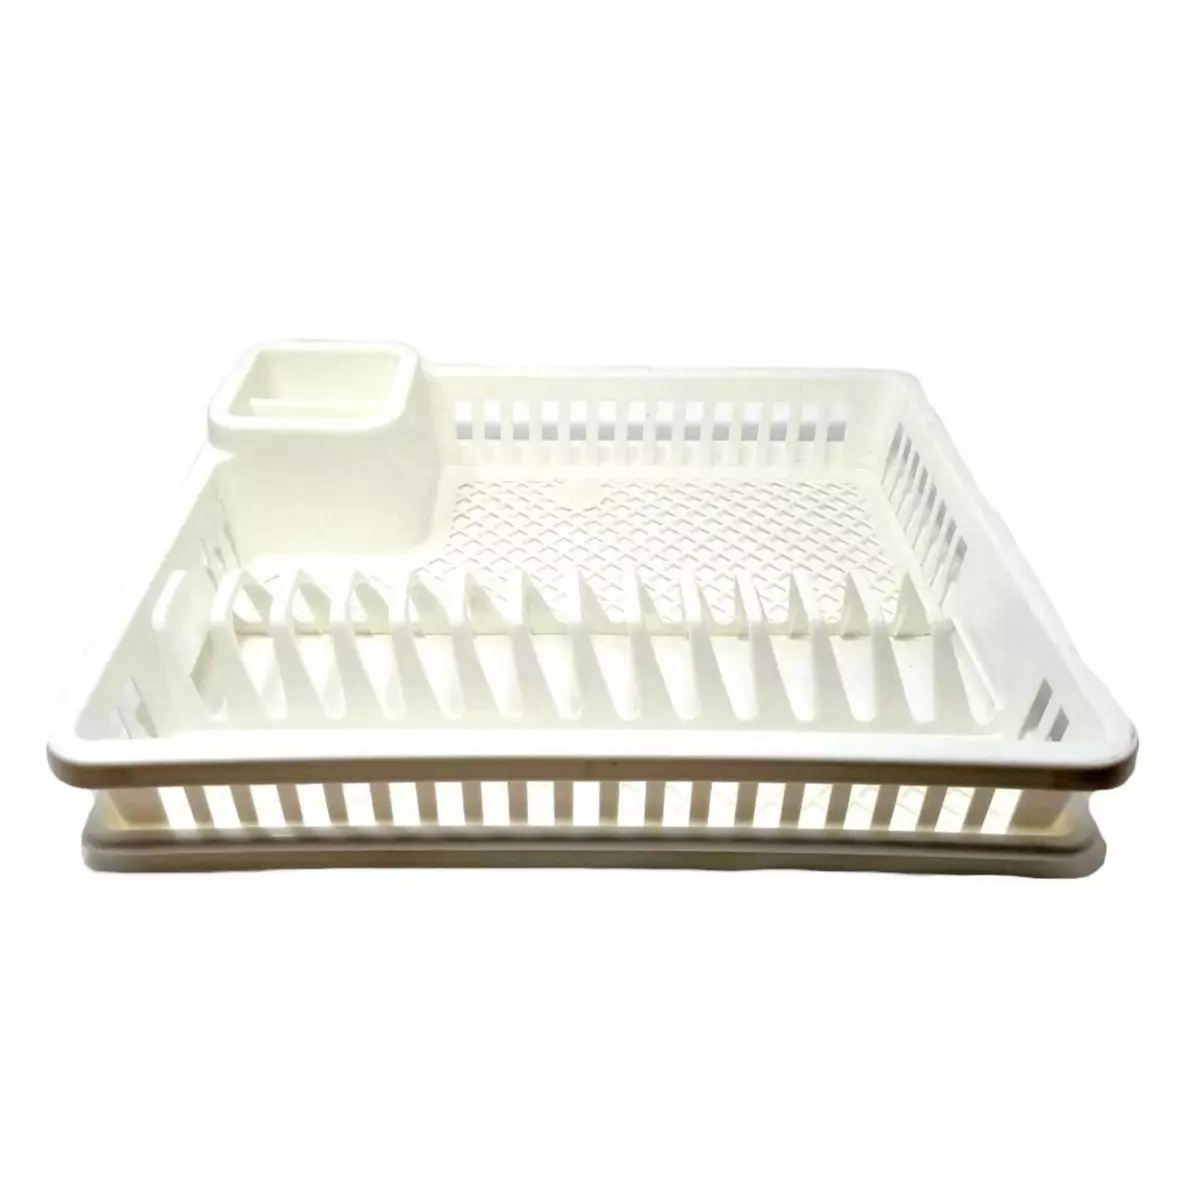  Egouttoir a vaisselle blanc 47.5 x 38 x 8 cm avec bac en plastique